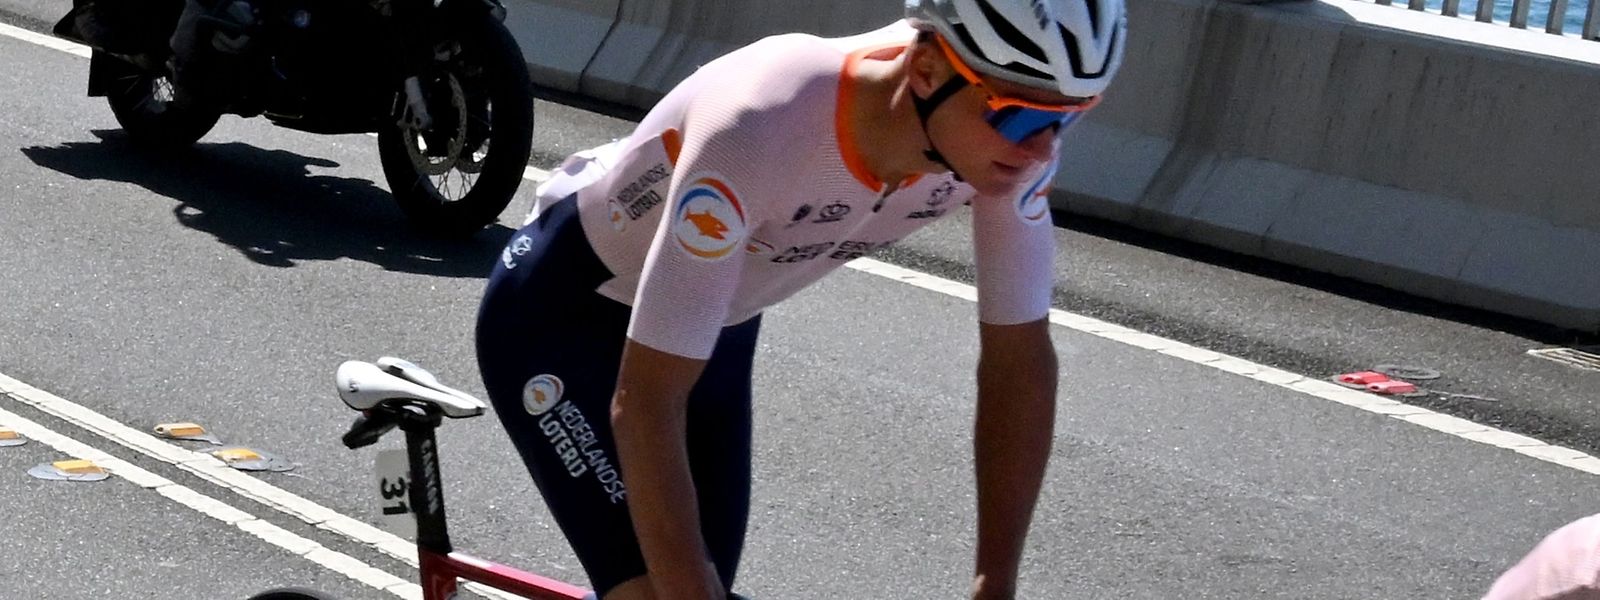 Der Niederländer Mathieu van der Poel gab das Straßenrennen um den WM-Titel nach einer chaotischen Nacht völlig übermüdet nach 30 gefahrenen Kilometern auf.